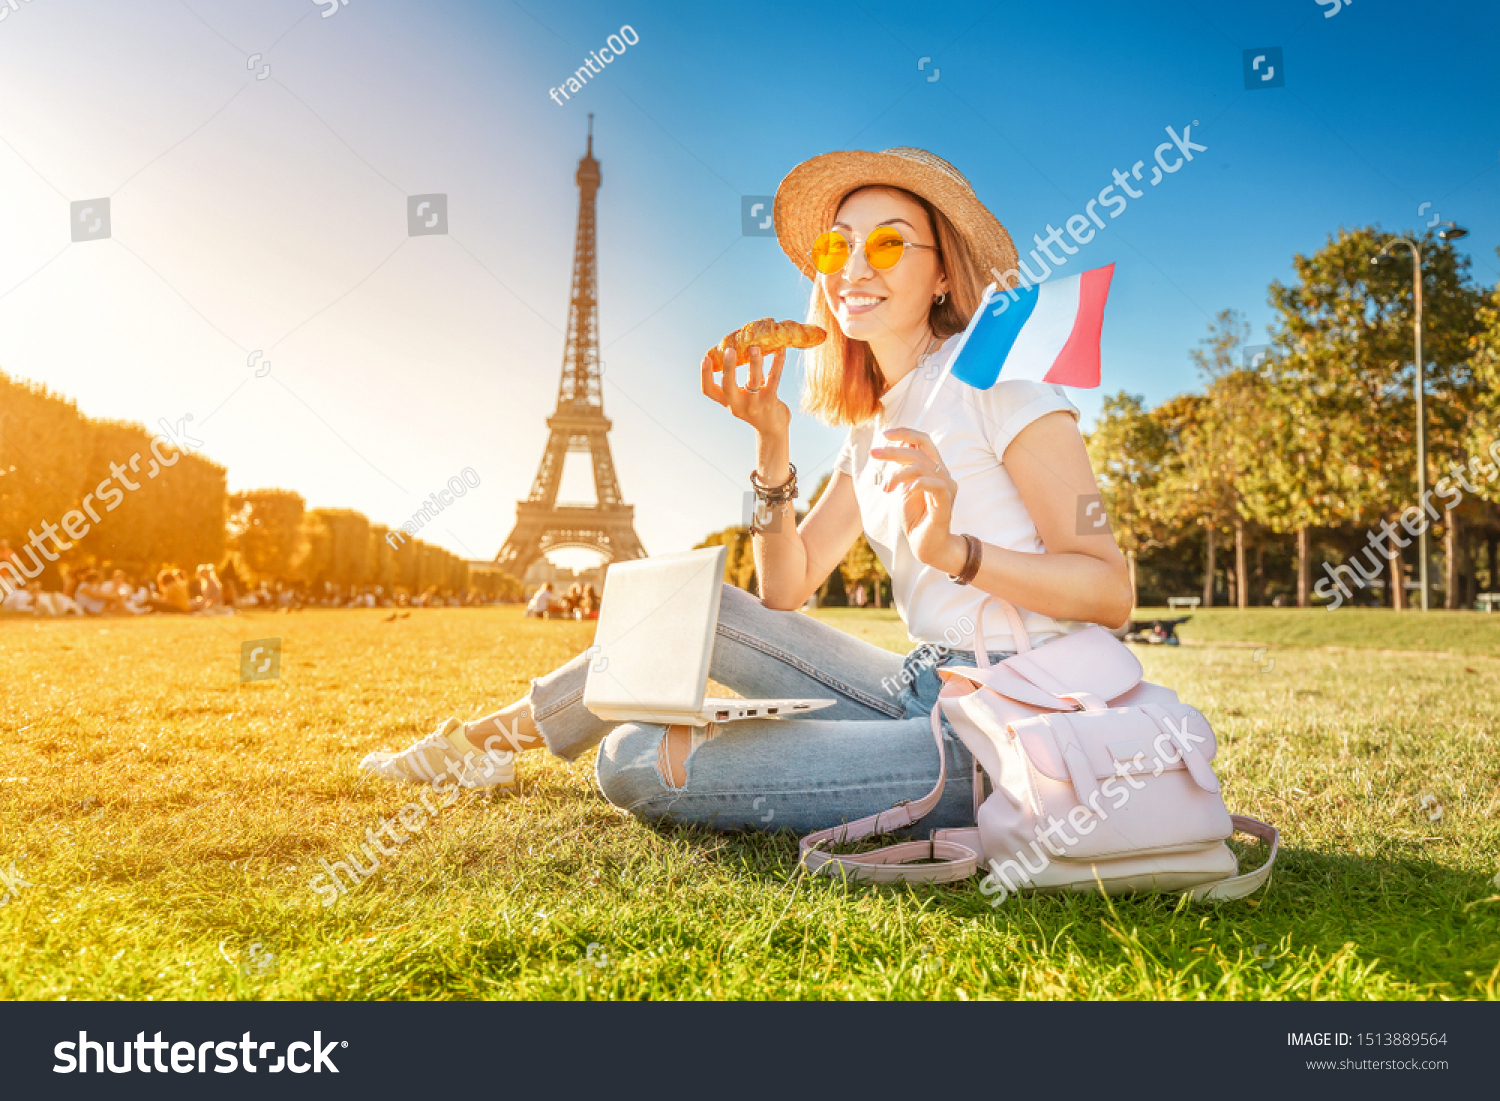 Наблюдать французский. Туристы во Франции. Интернет во Франции. Франция люди. Фотосессия во французском стиле.